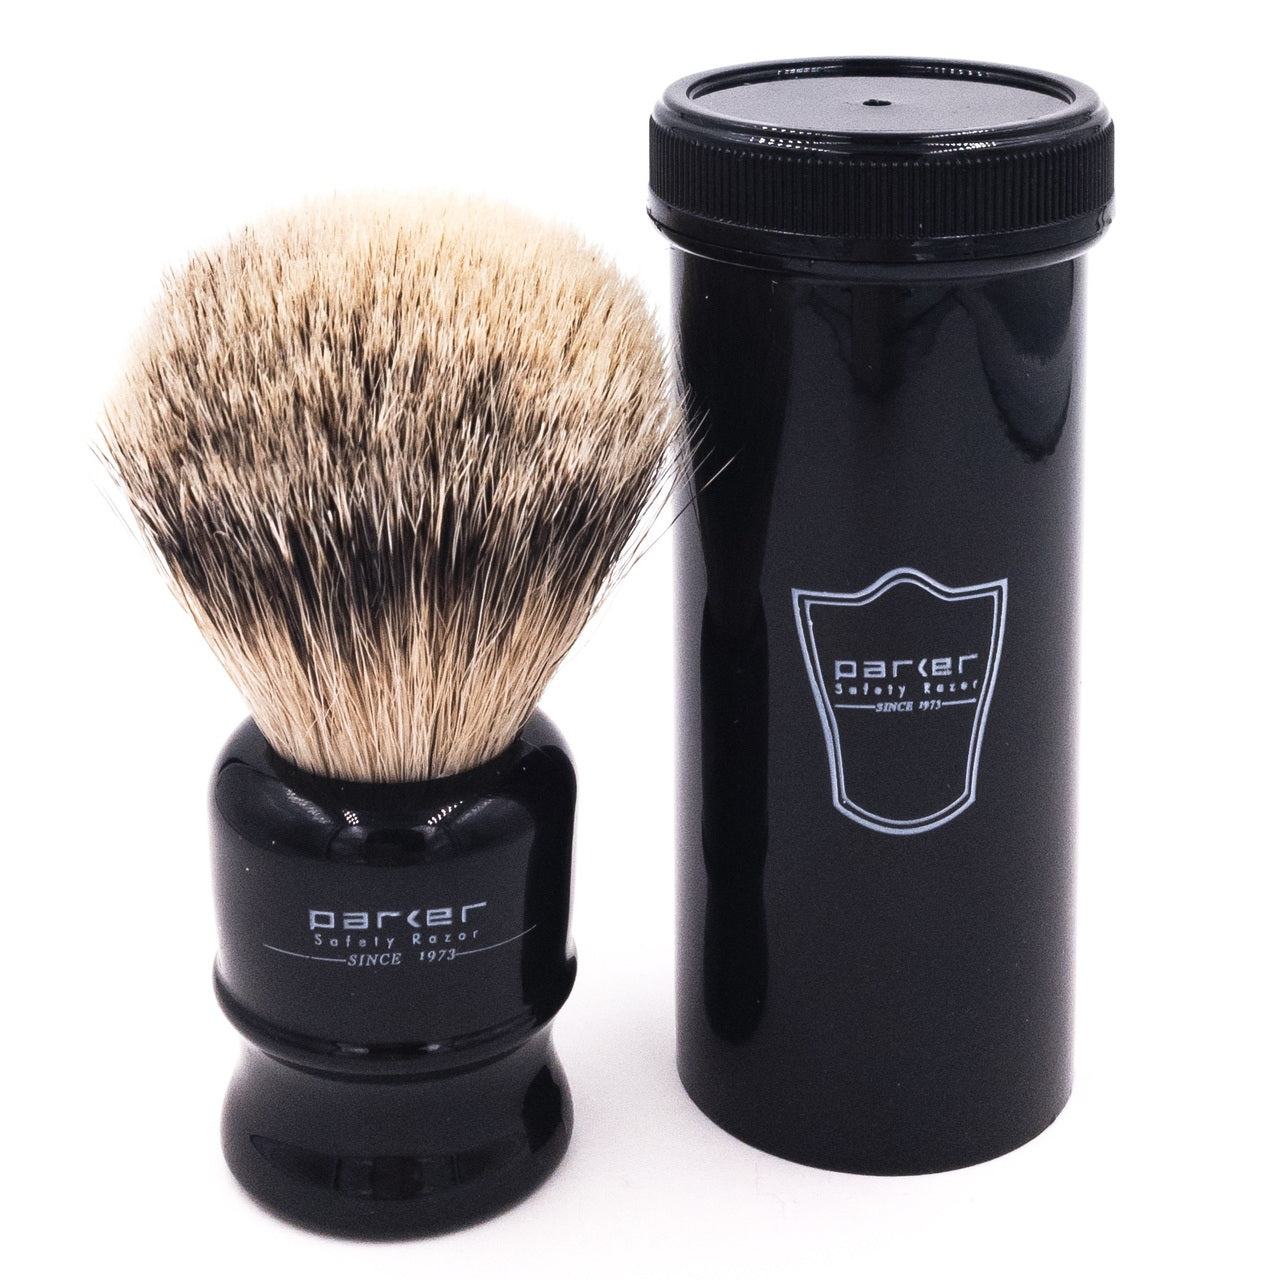 Parker - TRAVBHST Black Handle, Silvertip Badger Travel Shaving Brush in Tube